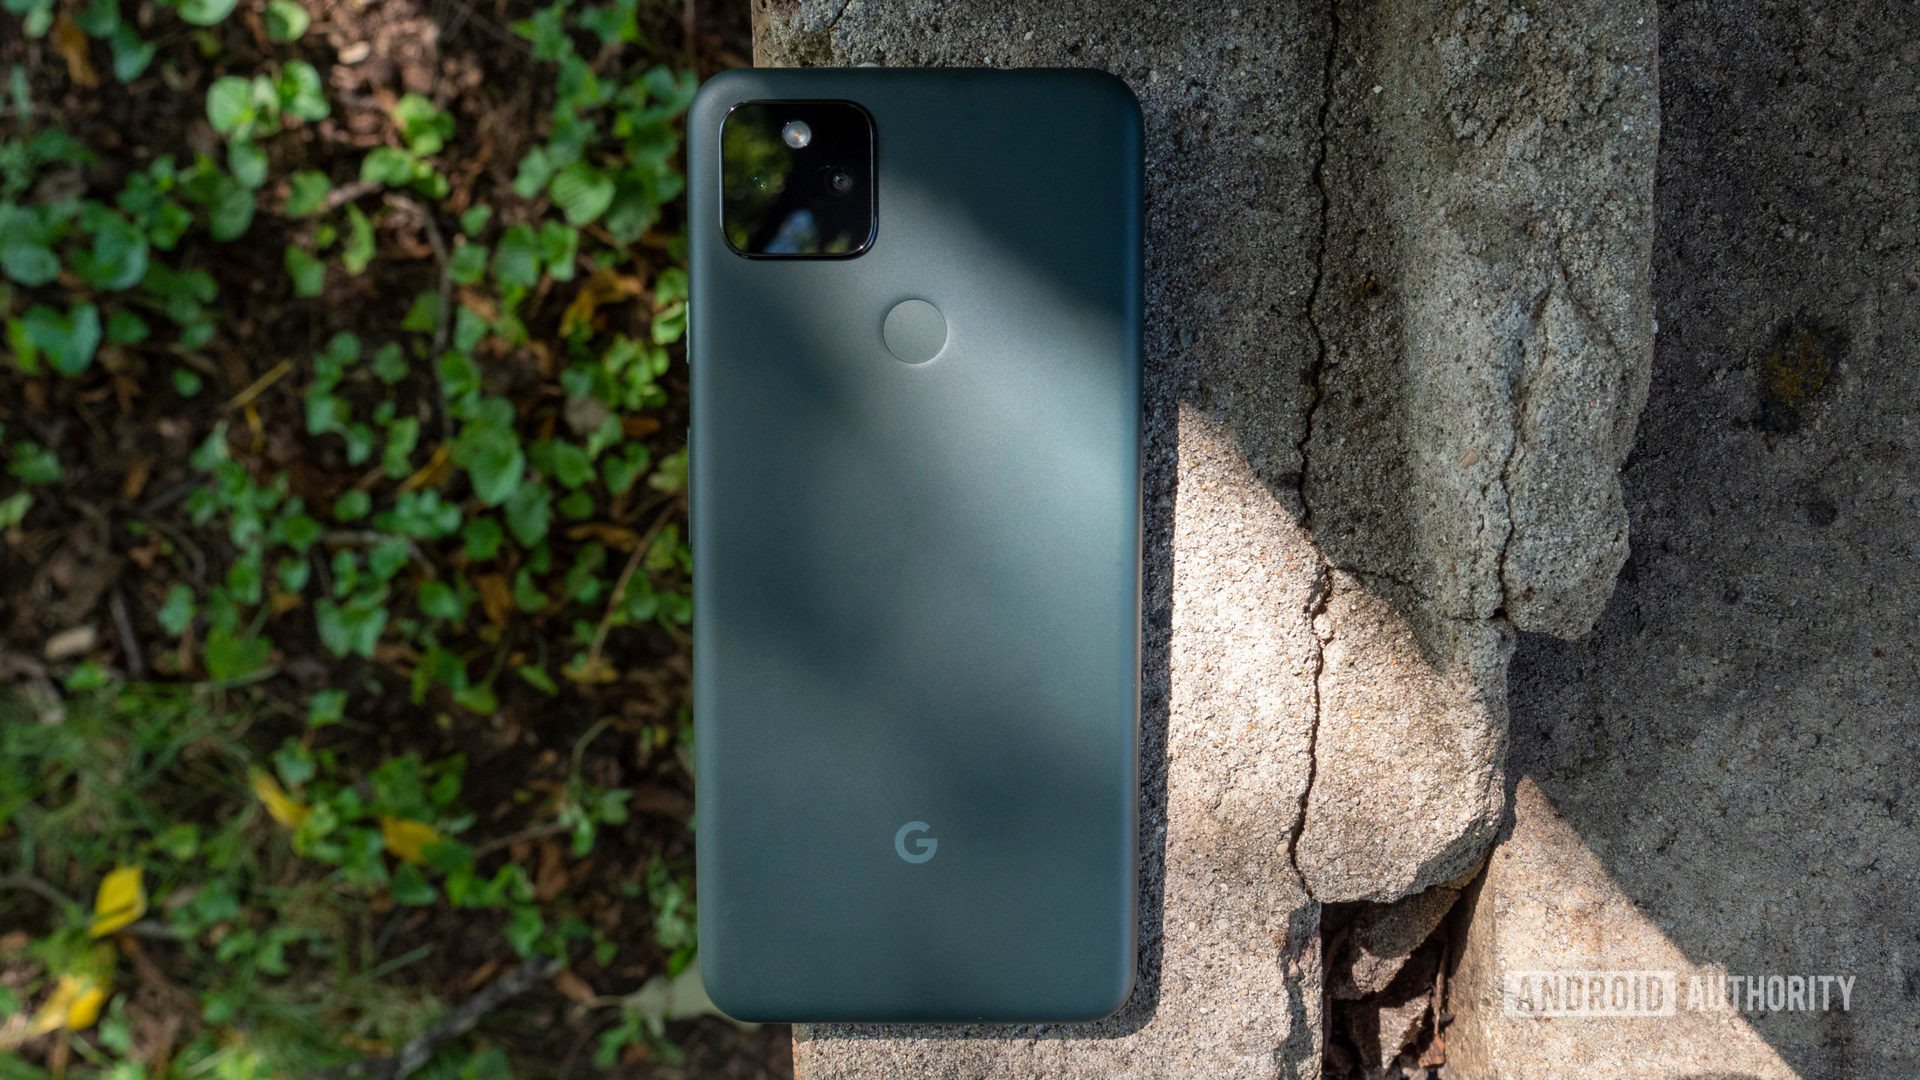 el píxel 5a de Google sobre un trozo de cemento que muestra su parte trasera en color mayoritariamente negro